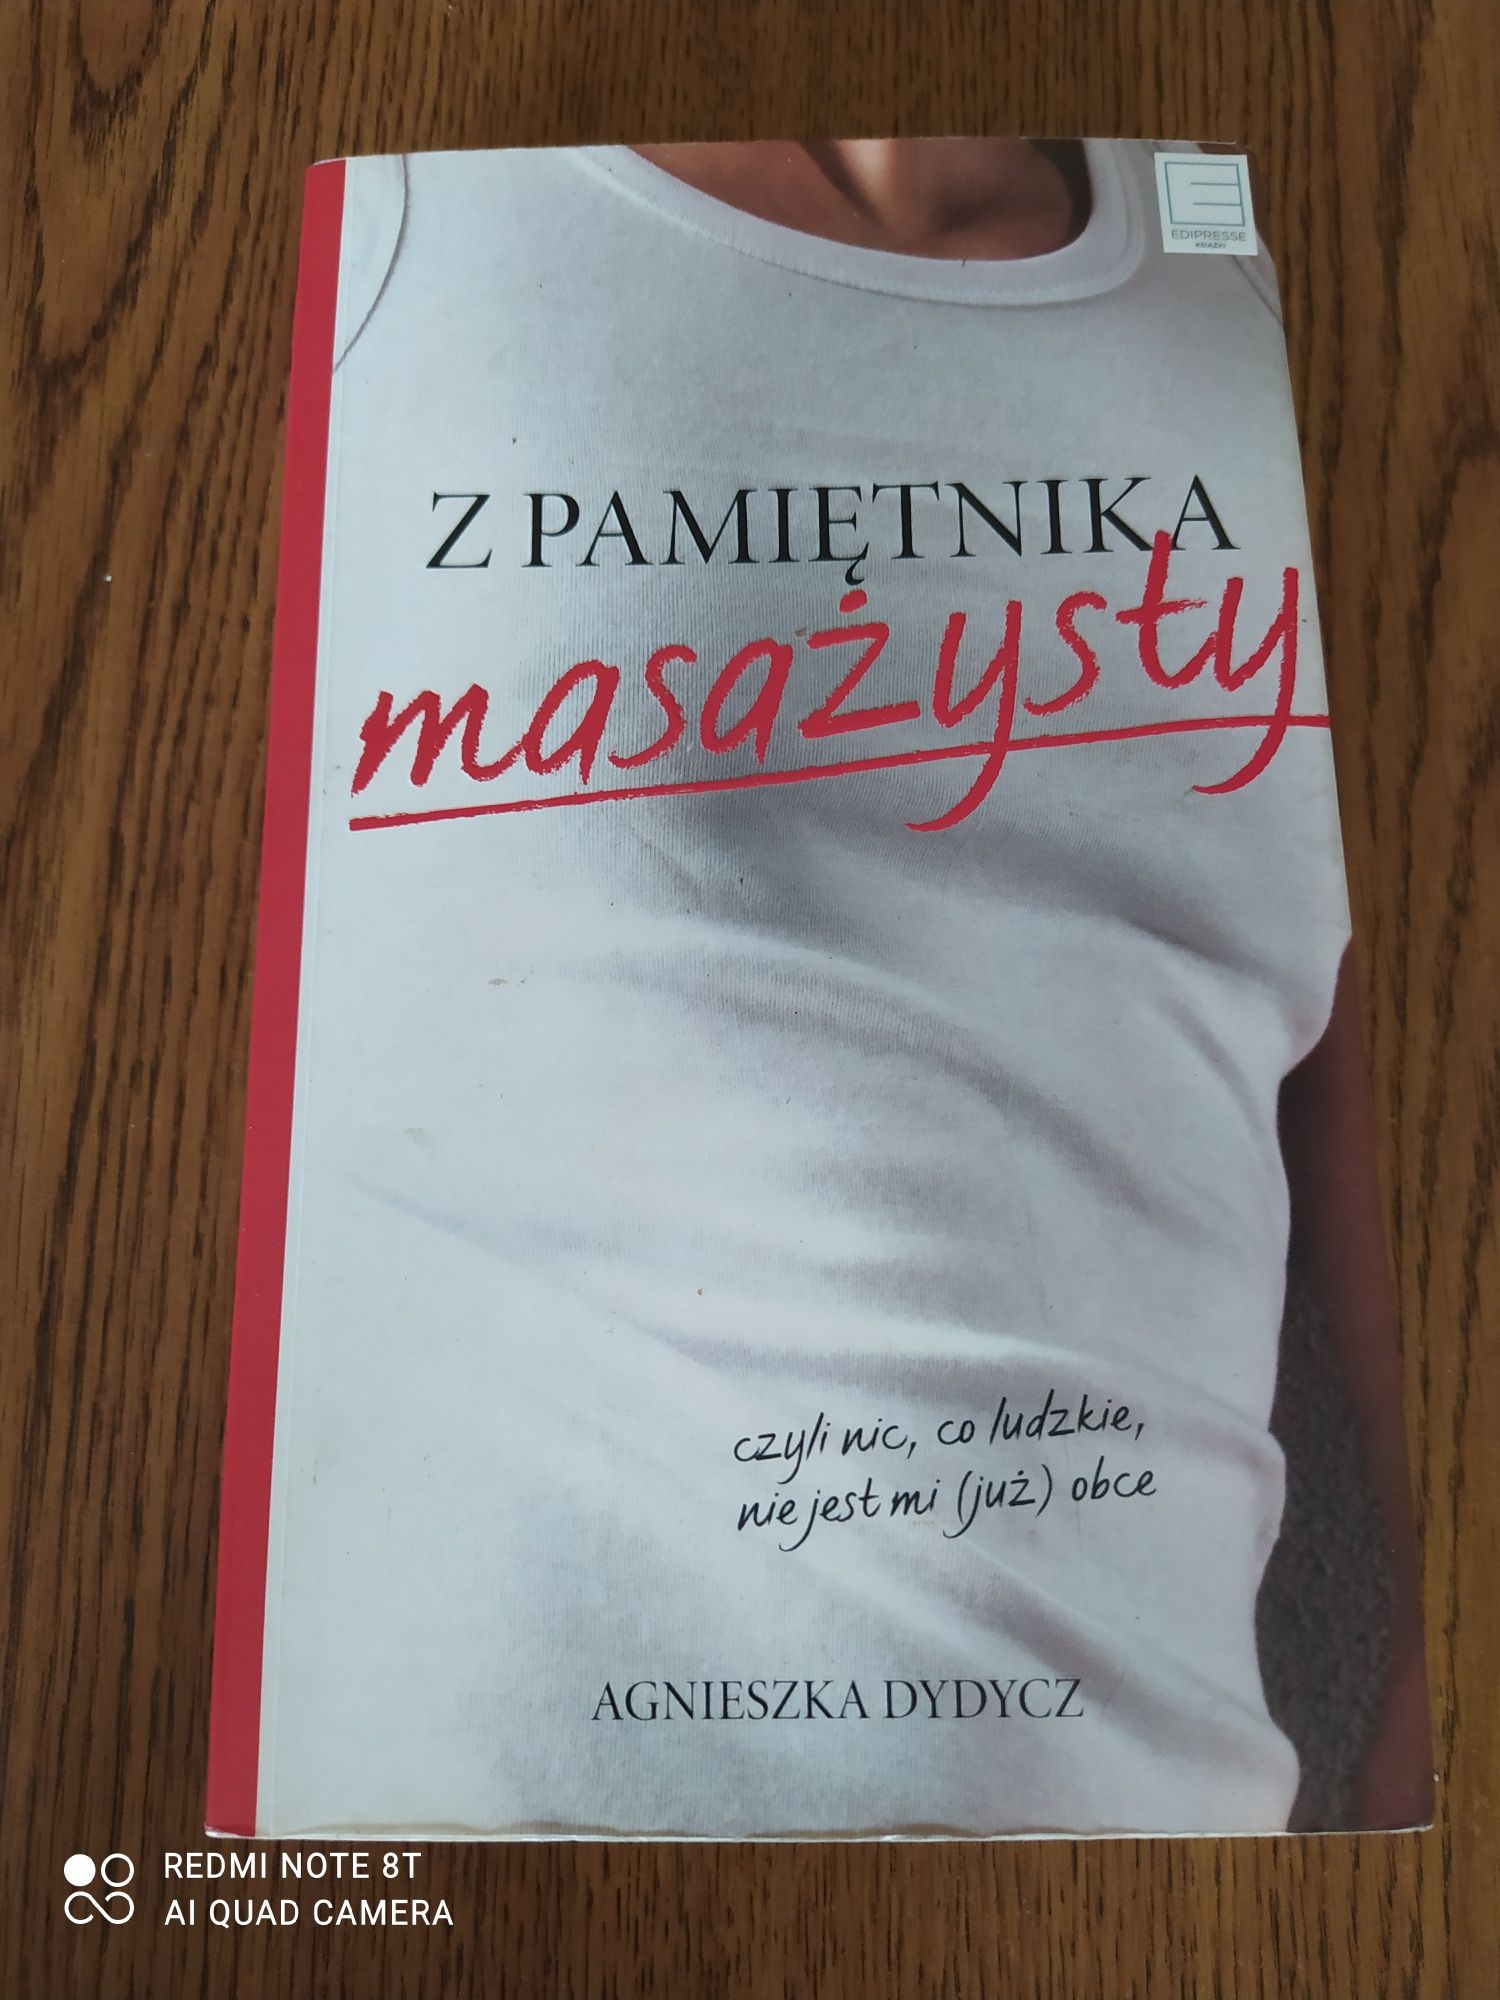 Z pamiętnika masażysty. Agnieszka Dydycz.